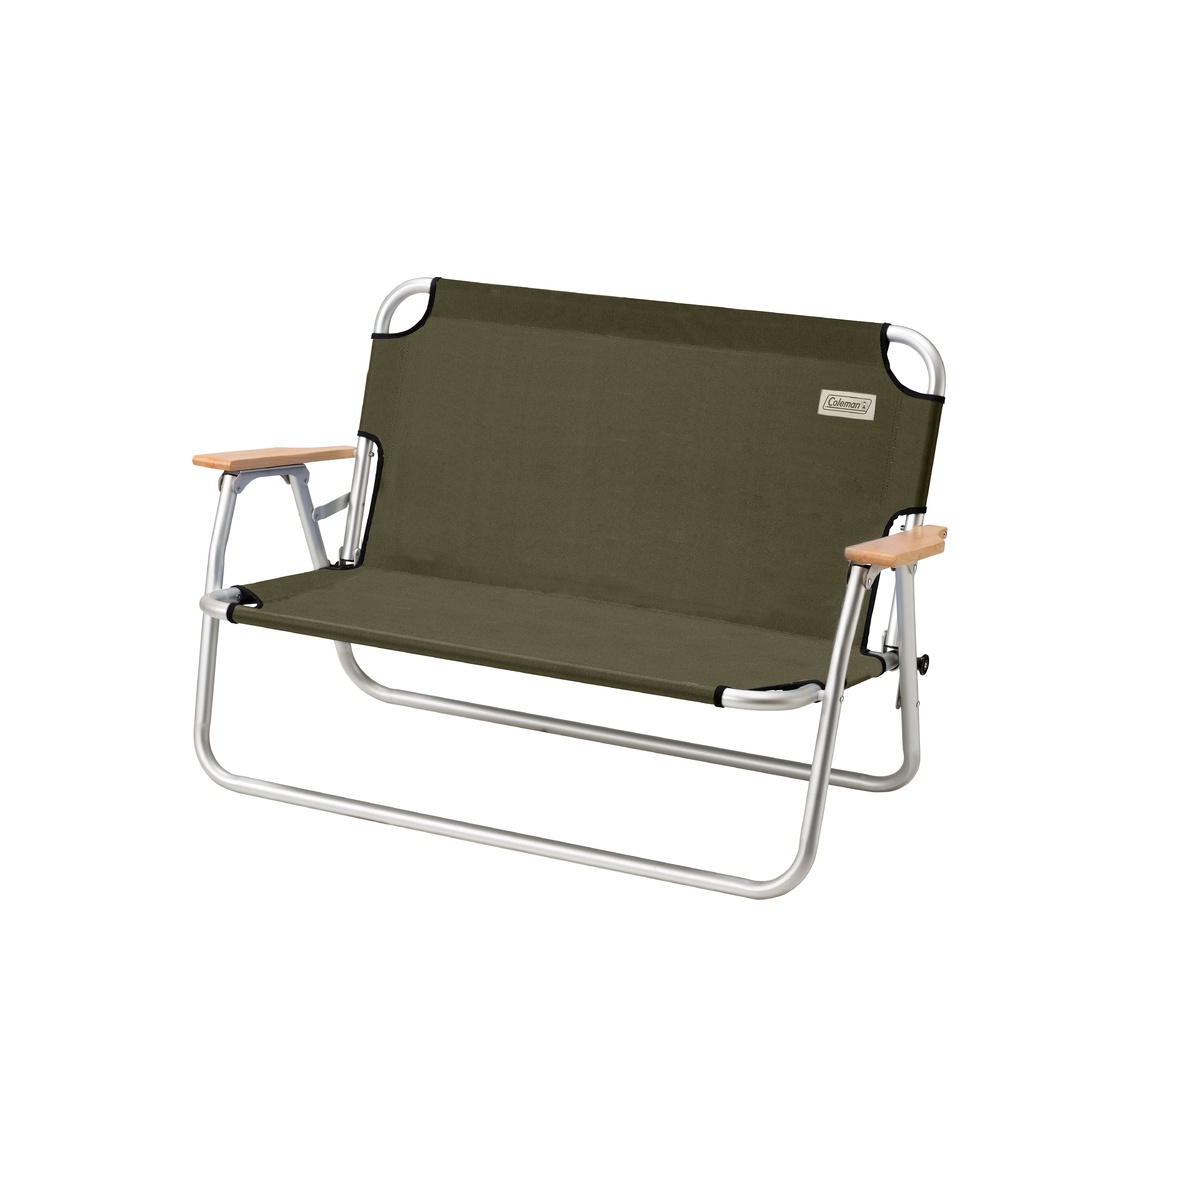 コールマン ネットワーク全体の最低価格に挑戦 キャンプ用品 チェア 椅子 ベンチ オリーブ COLEMAN 納得できる割引 2000033807 コット リラックスフォールディングベンチ